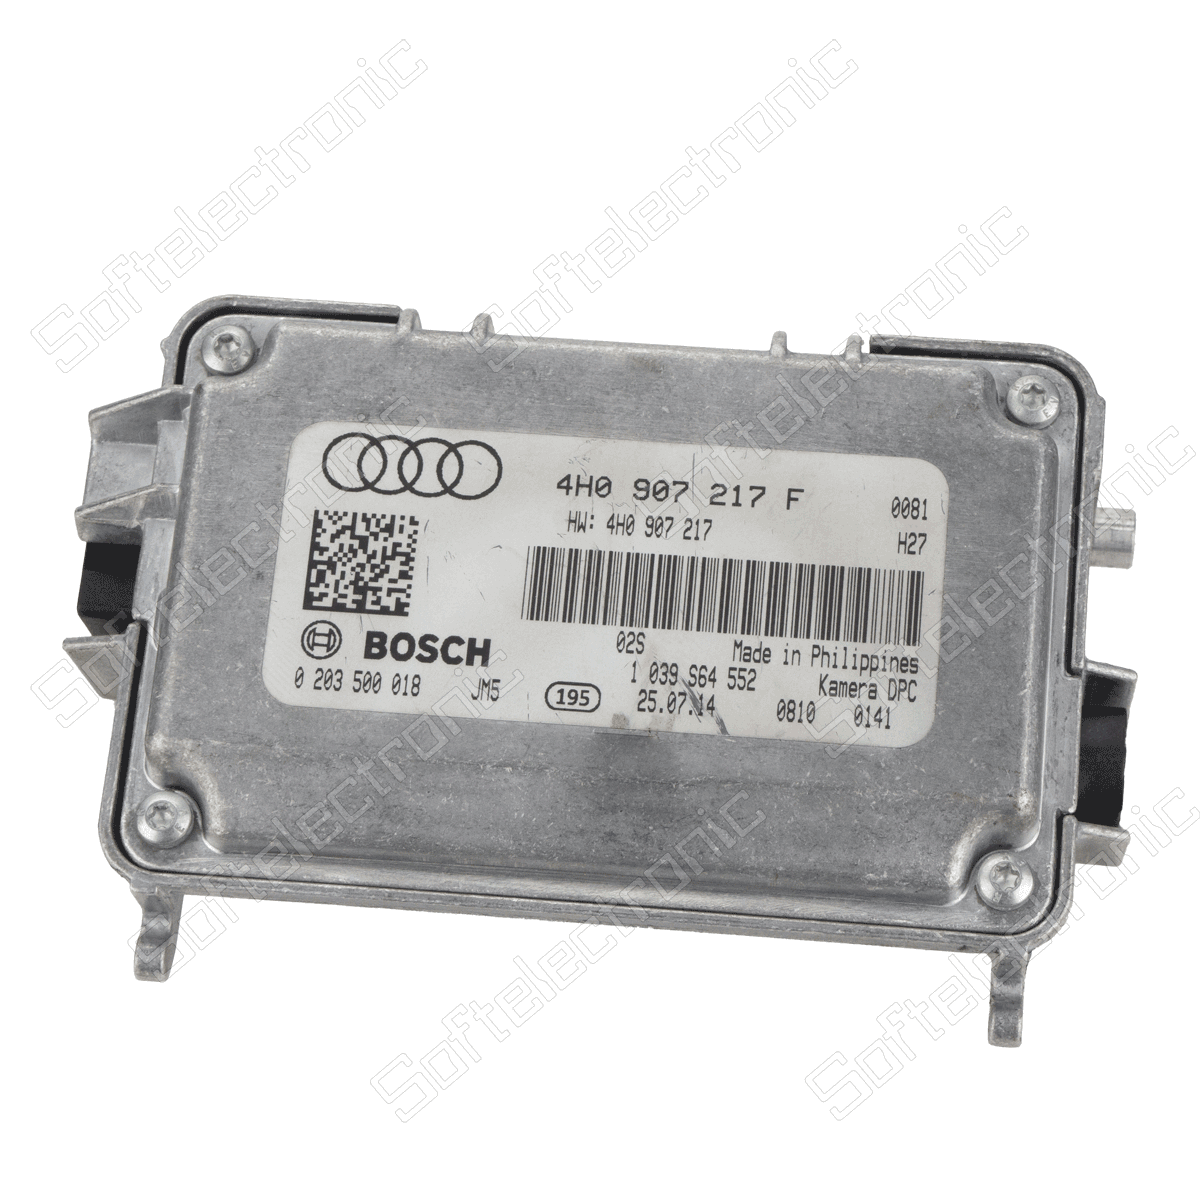 Repair of Audi Lane Assistant System Camera Module